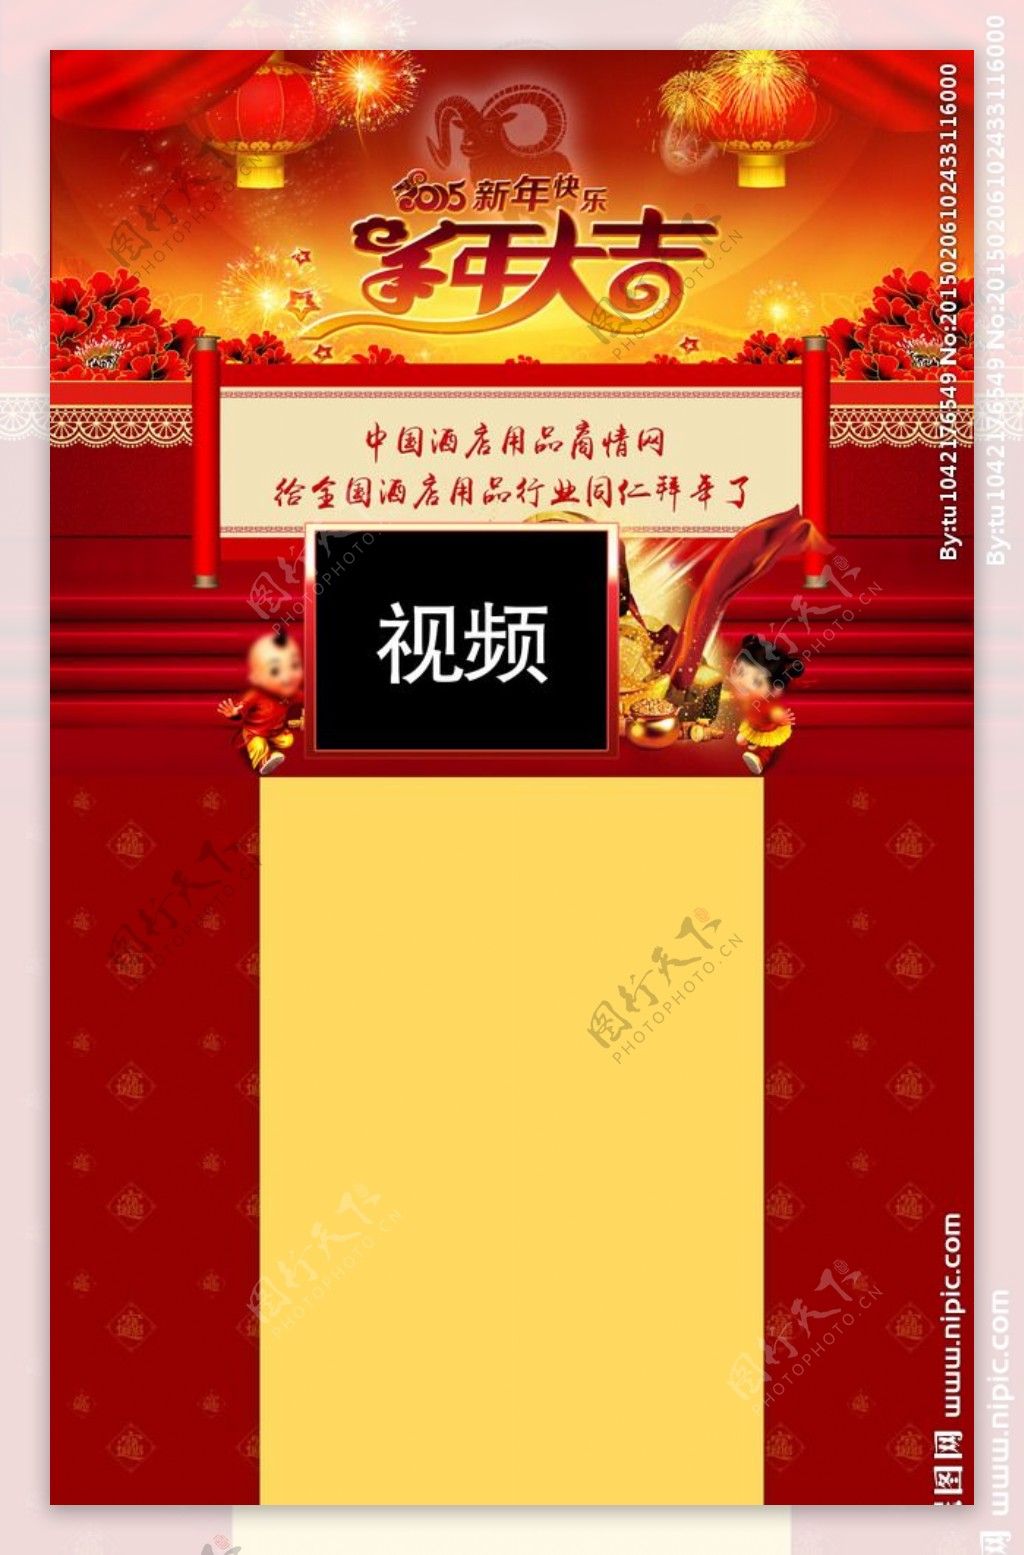 中国酒店用品商情网羊年春节网页图片